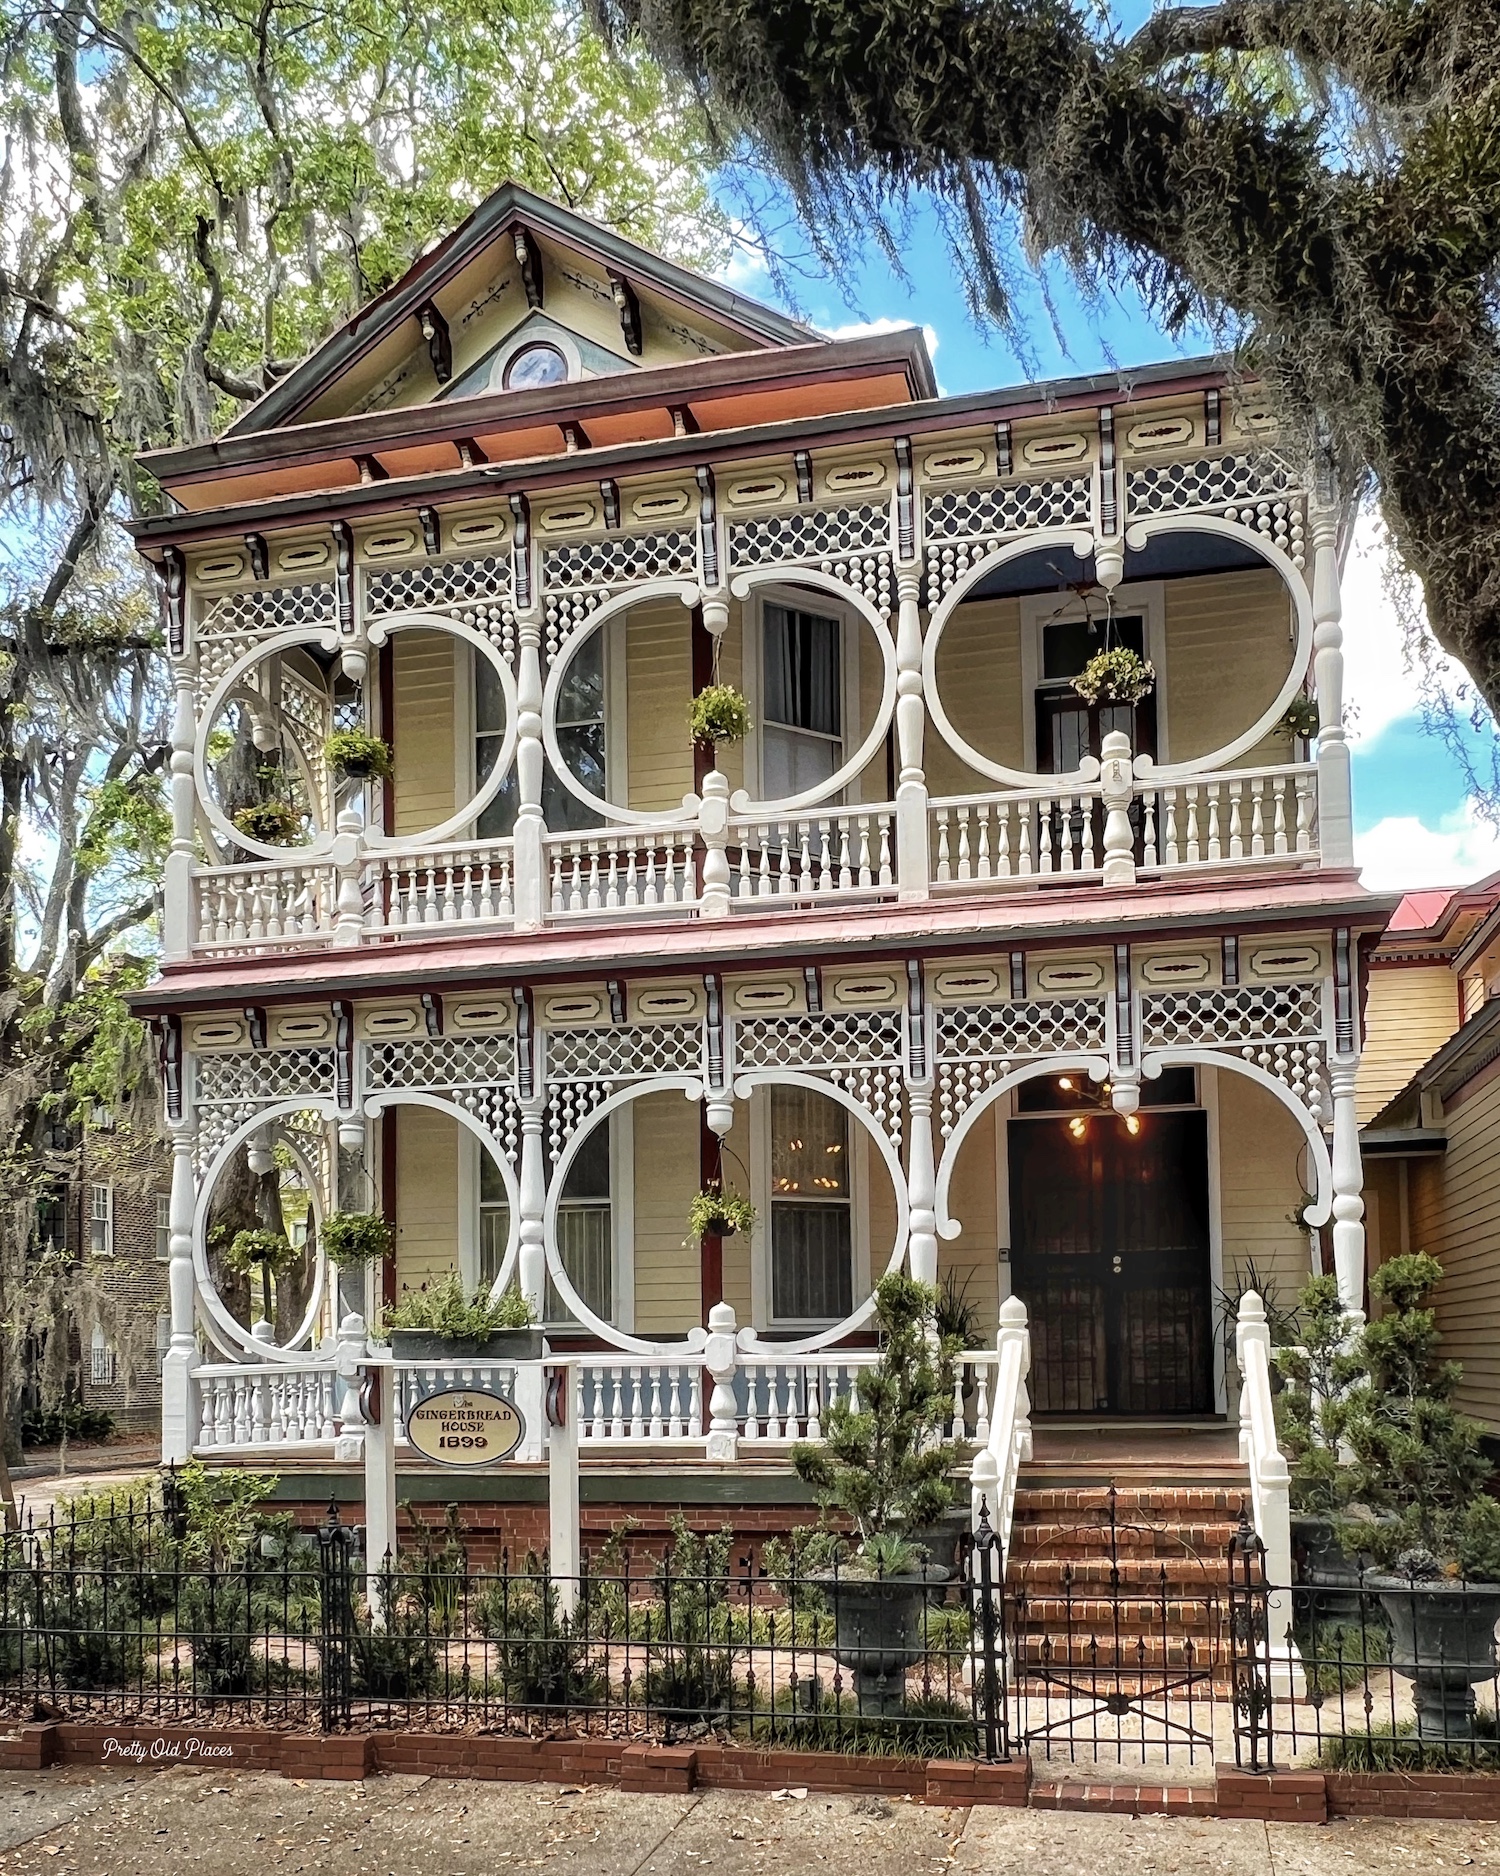 The Gingerbead House – Savannah